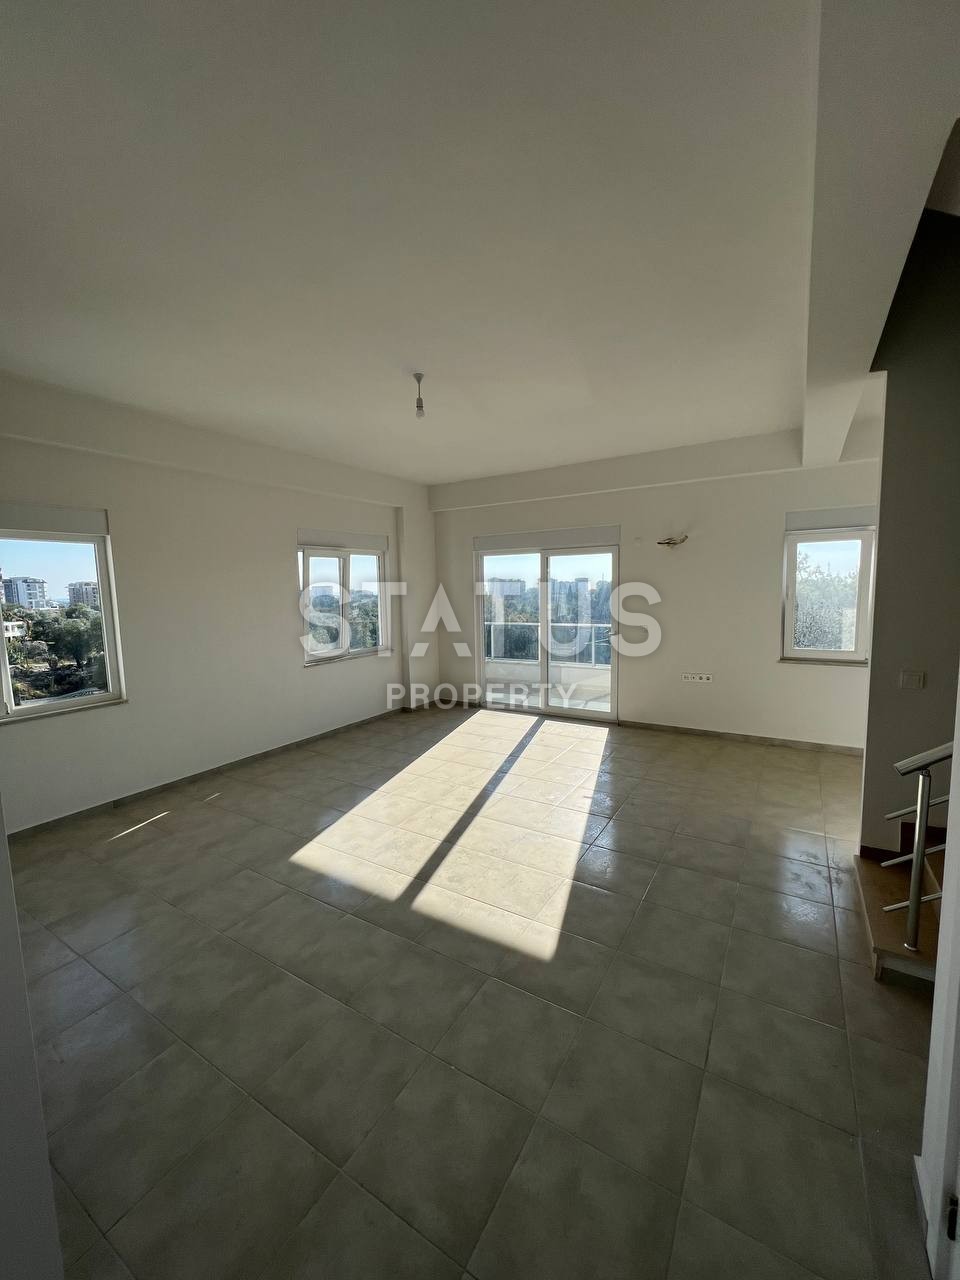 Трехкомнатный дуплекс  без мебели в новом комплексе в Авсалларе , 135м2 фото 1